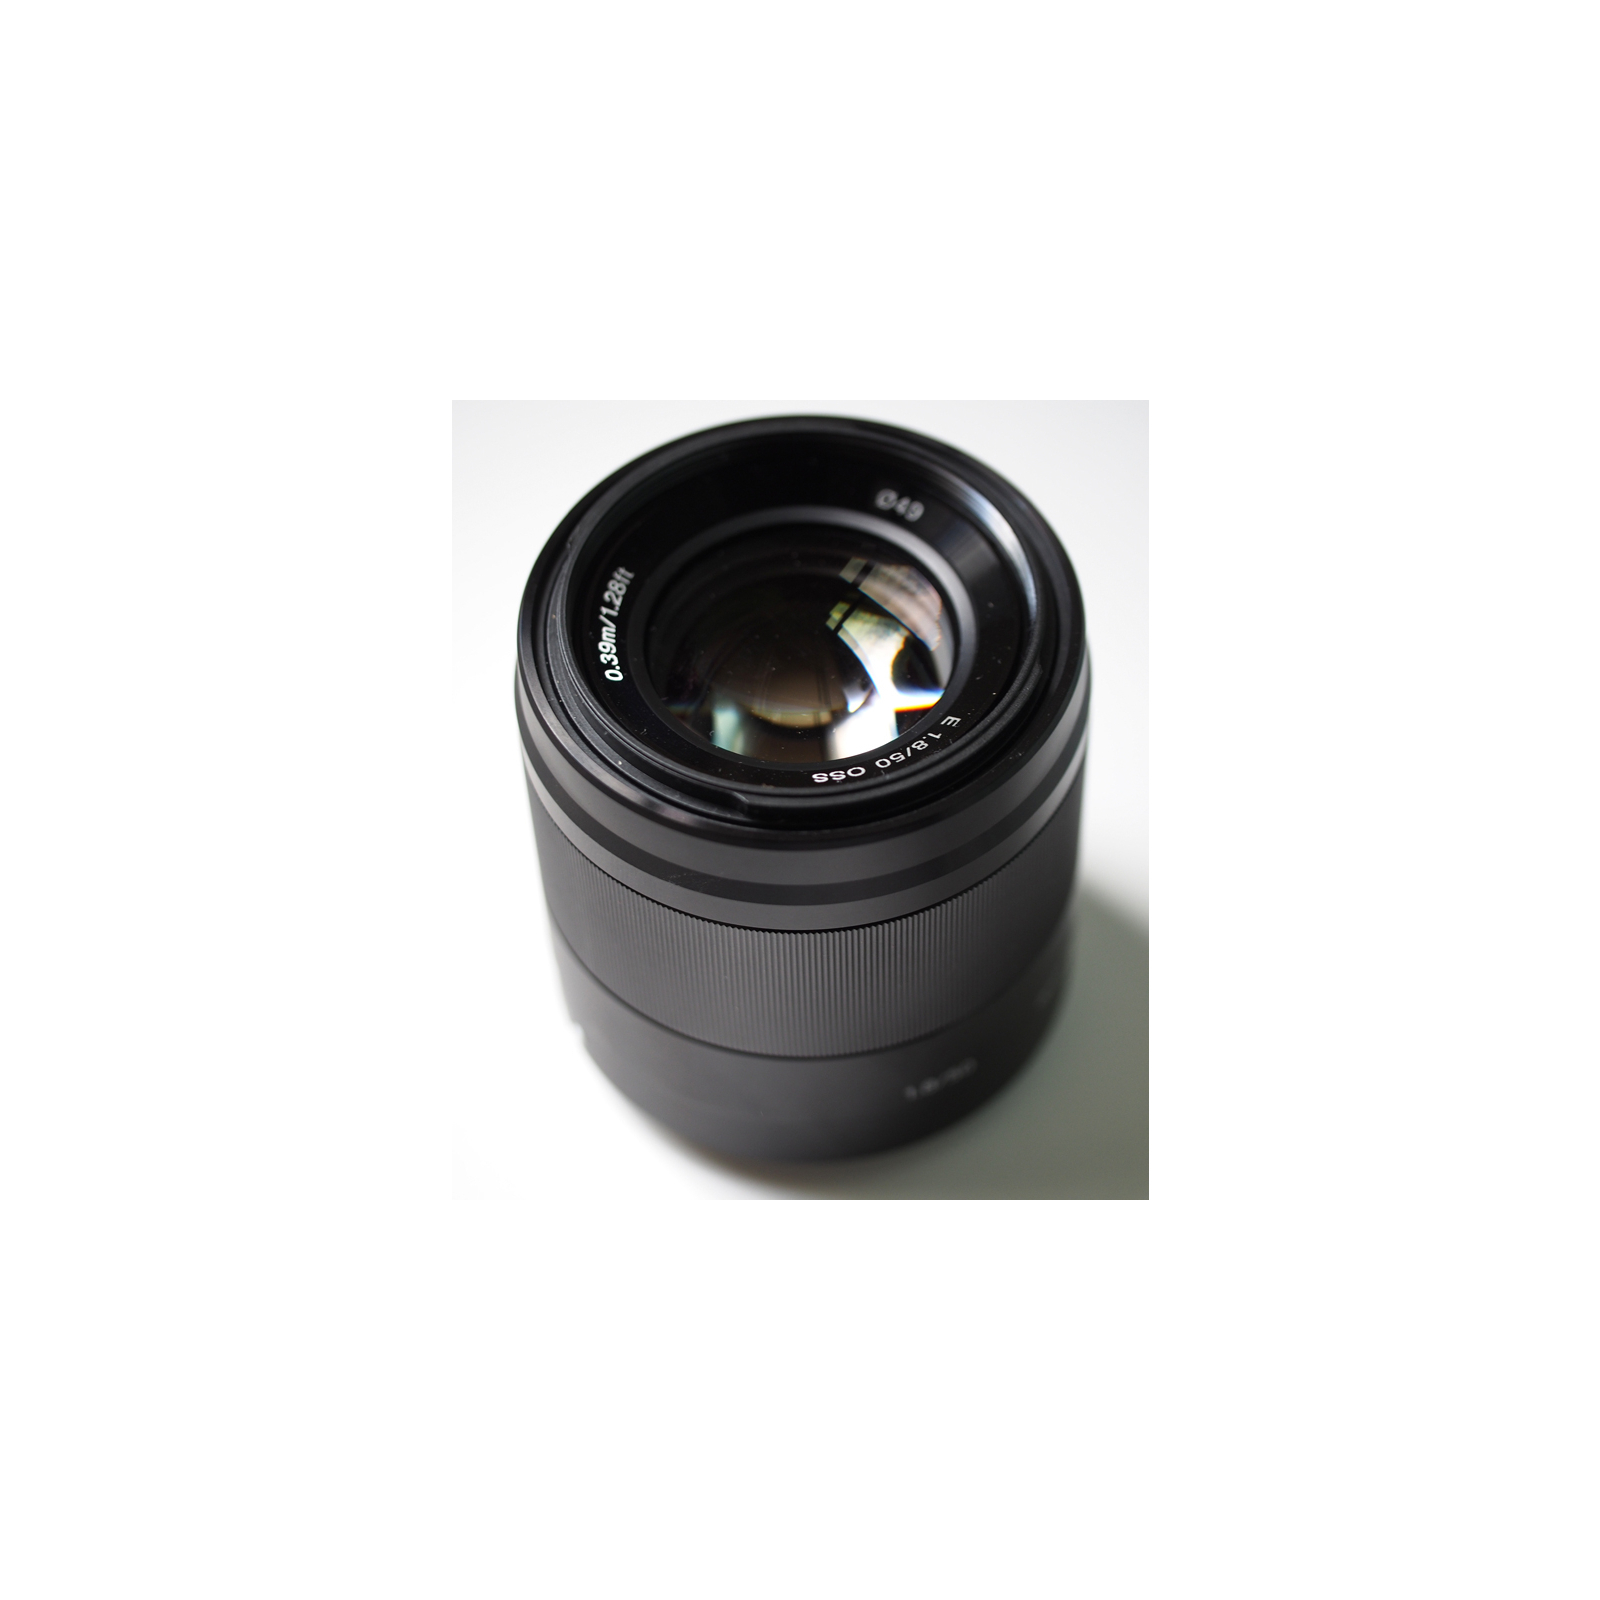 Об'єктив Sony 50mm f/1.8 Black for NEX (SEL50F18B.AE) зображення 5